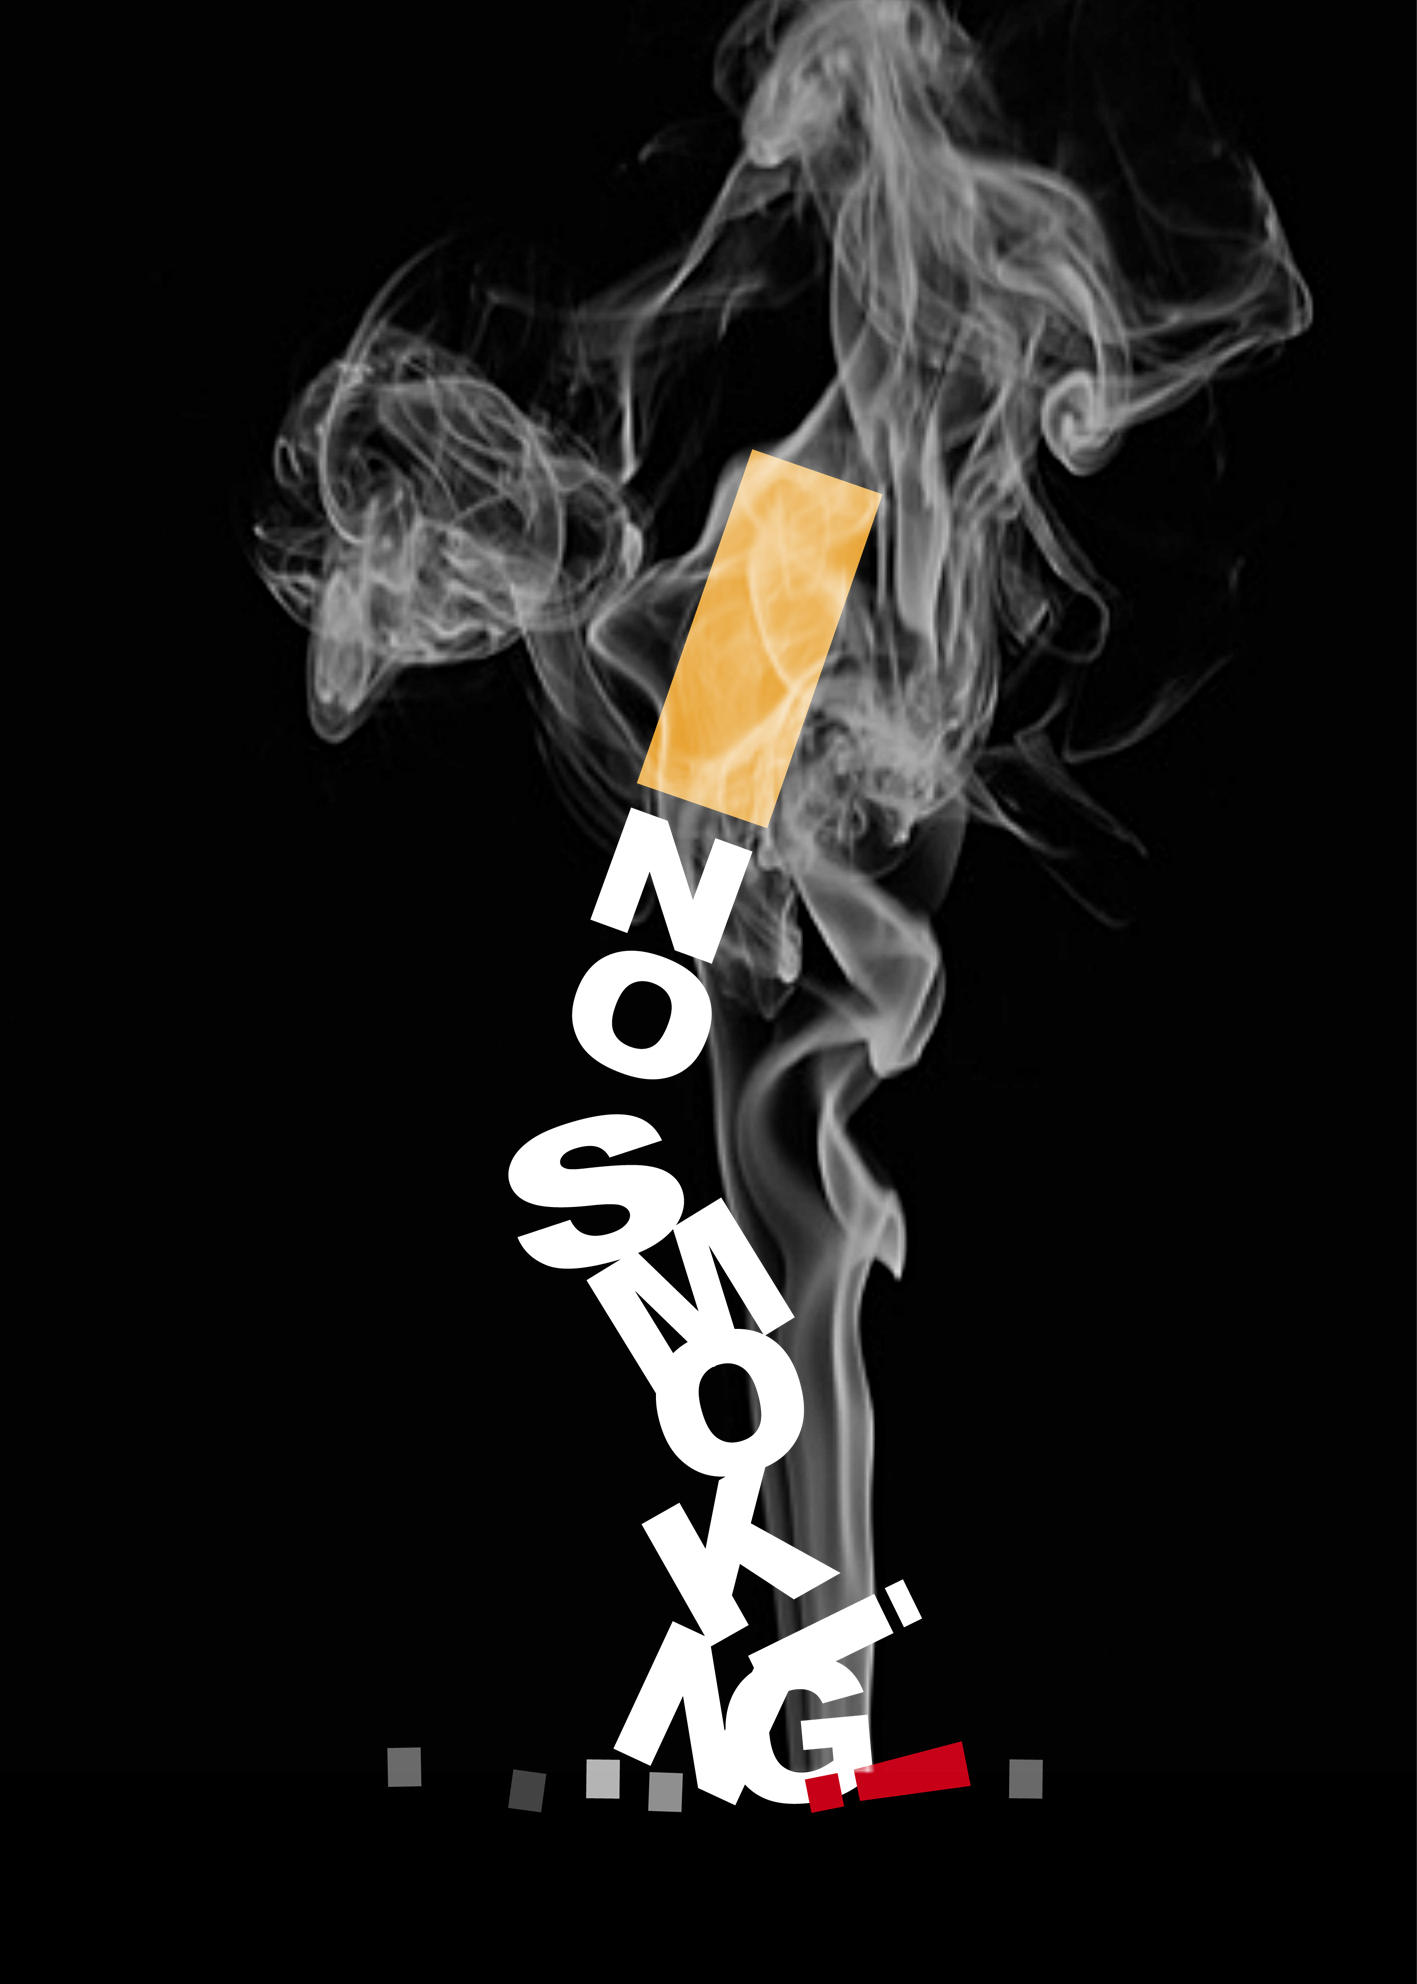 upc bond cigarettes